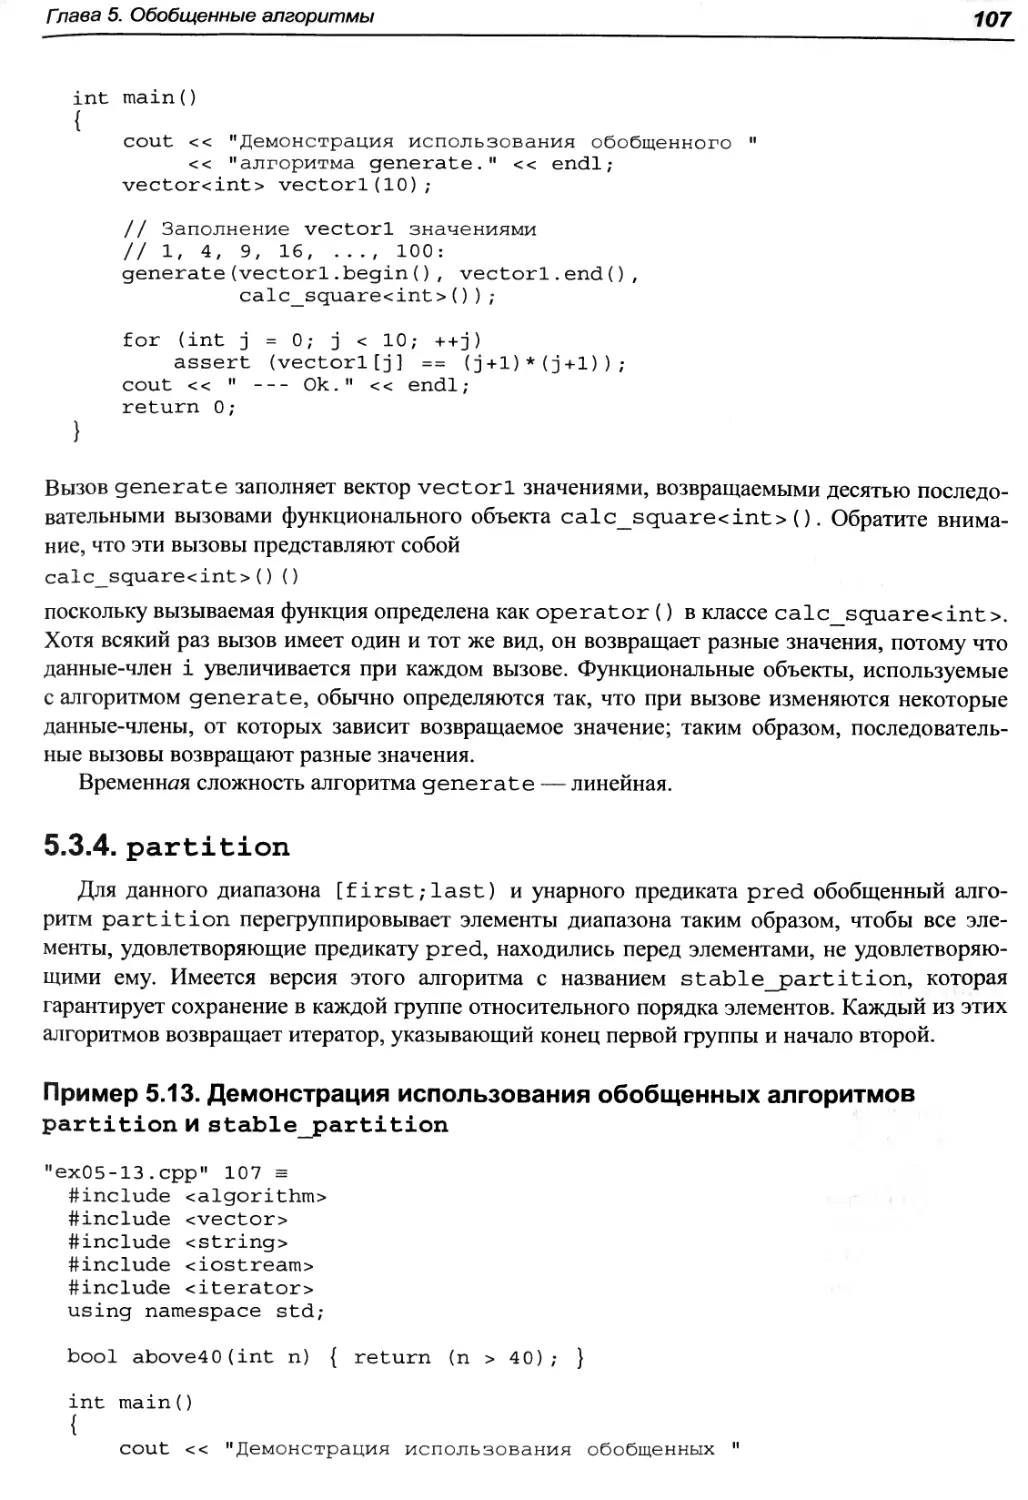 Пример 5.13. Демонстрация использования обобщенных алгоритмов partition и stable_partition
5.3.4. partition